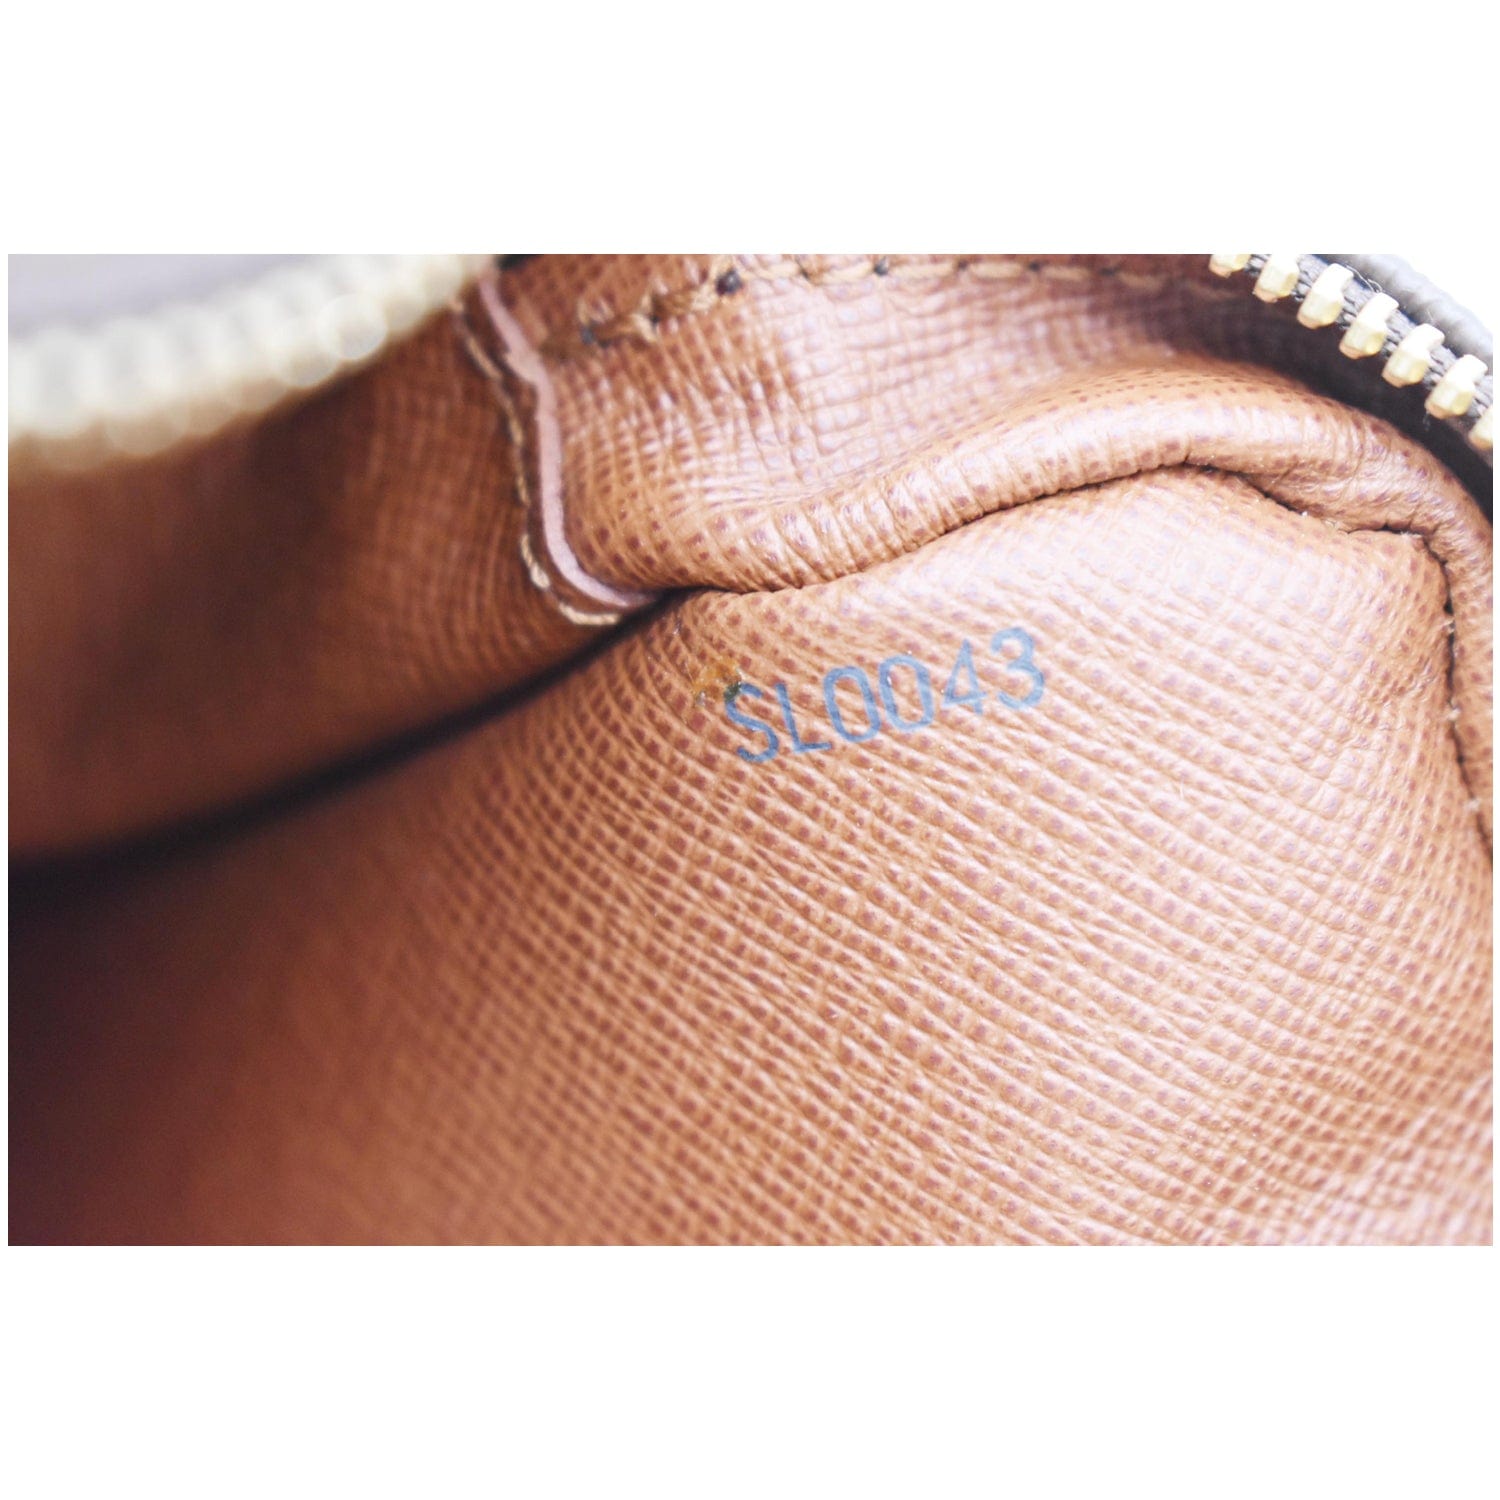 Louis Vuitton Trocadero Handbag Monogram Canvas 27 Brown 22394351